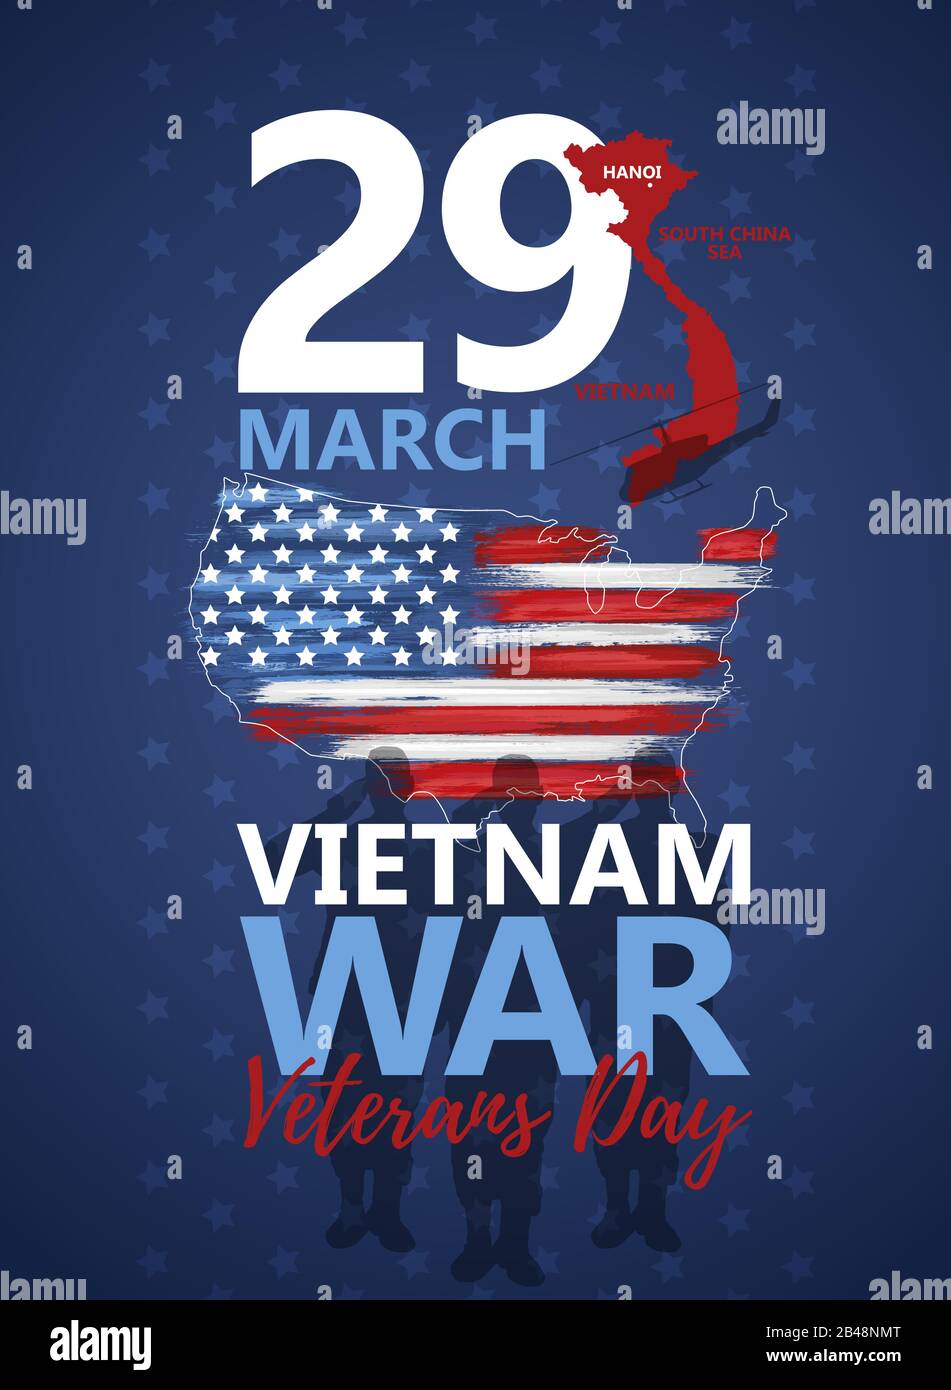 Vietnam war march Stock Vector Images - Alamy